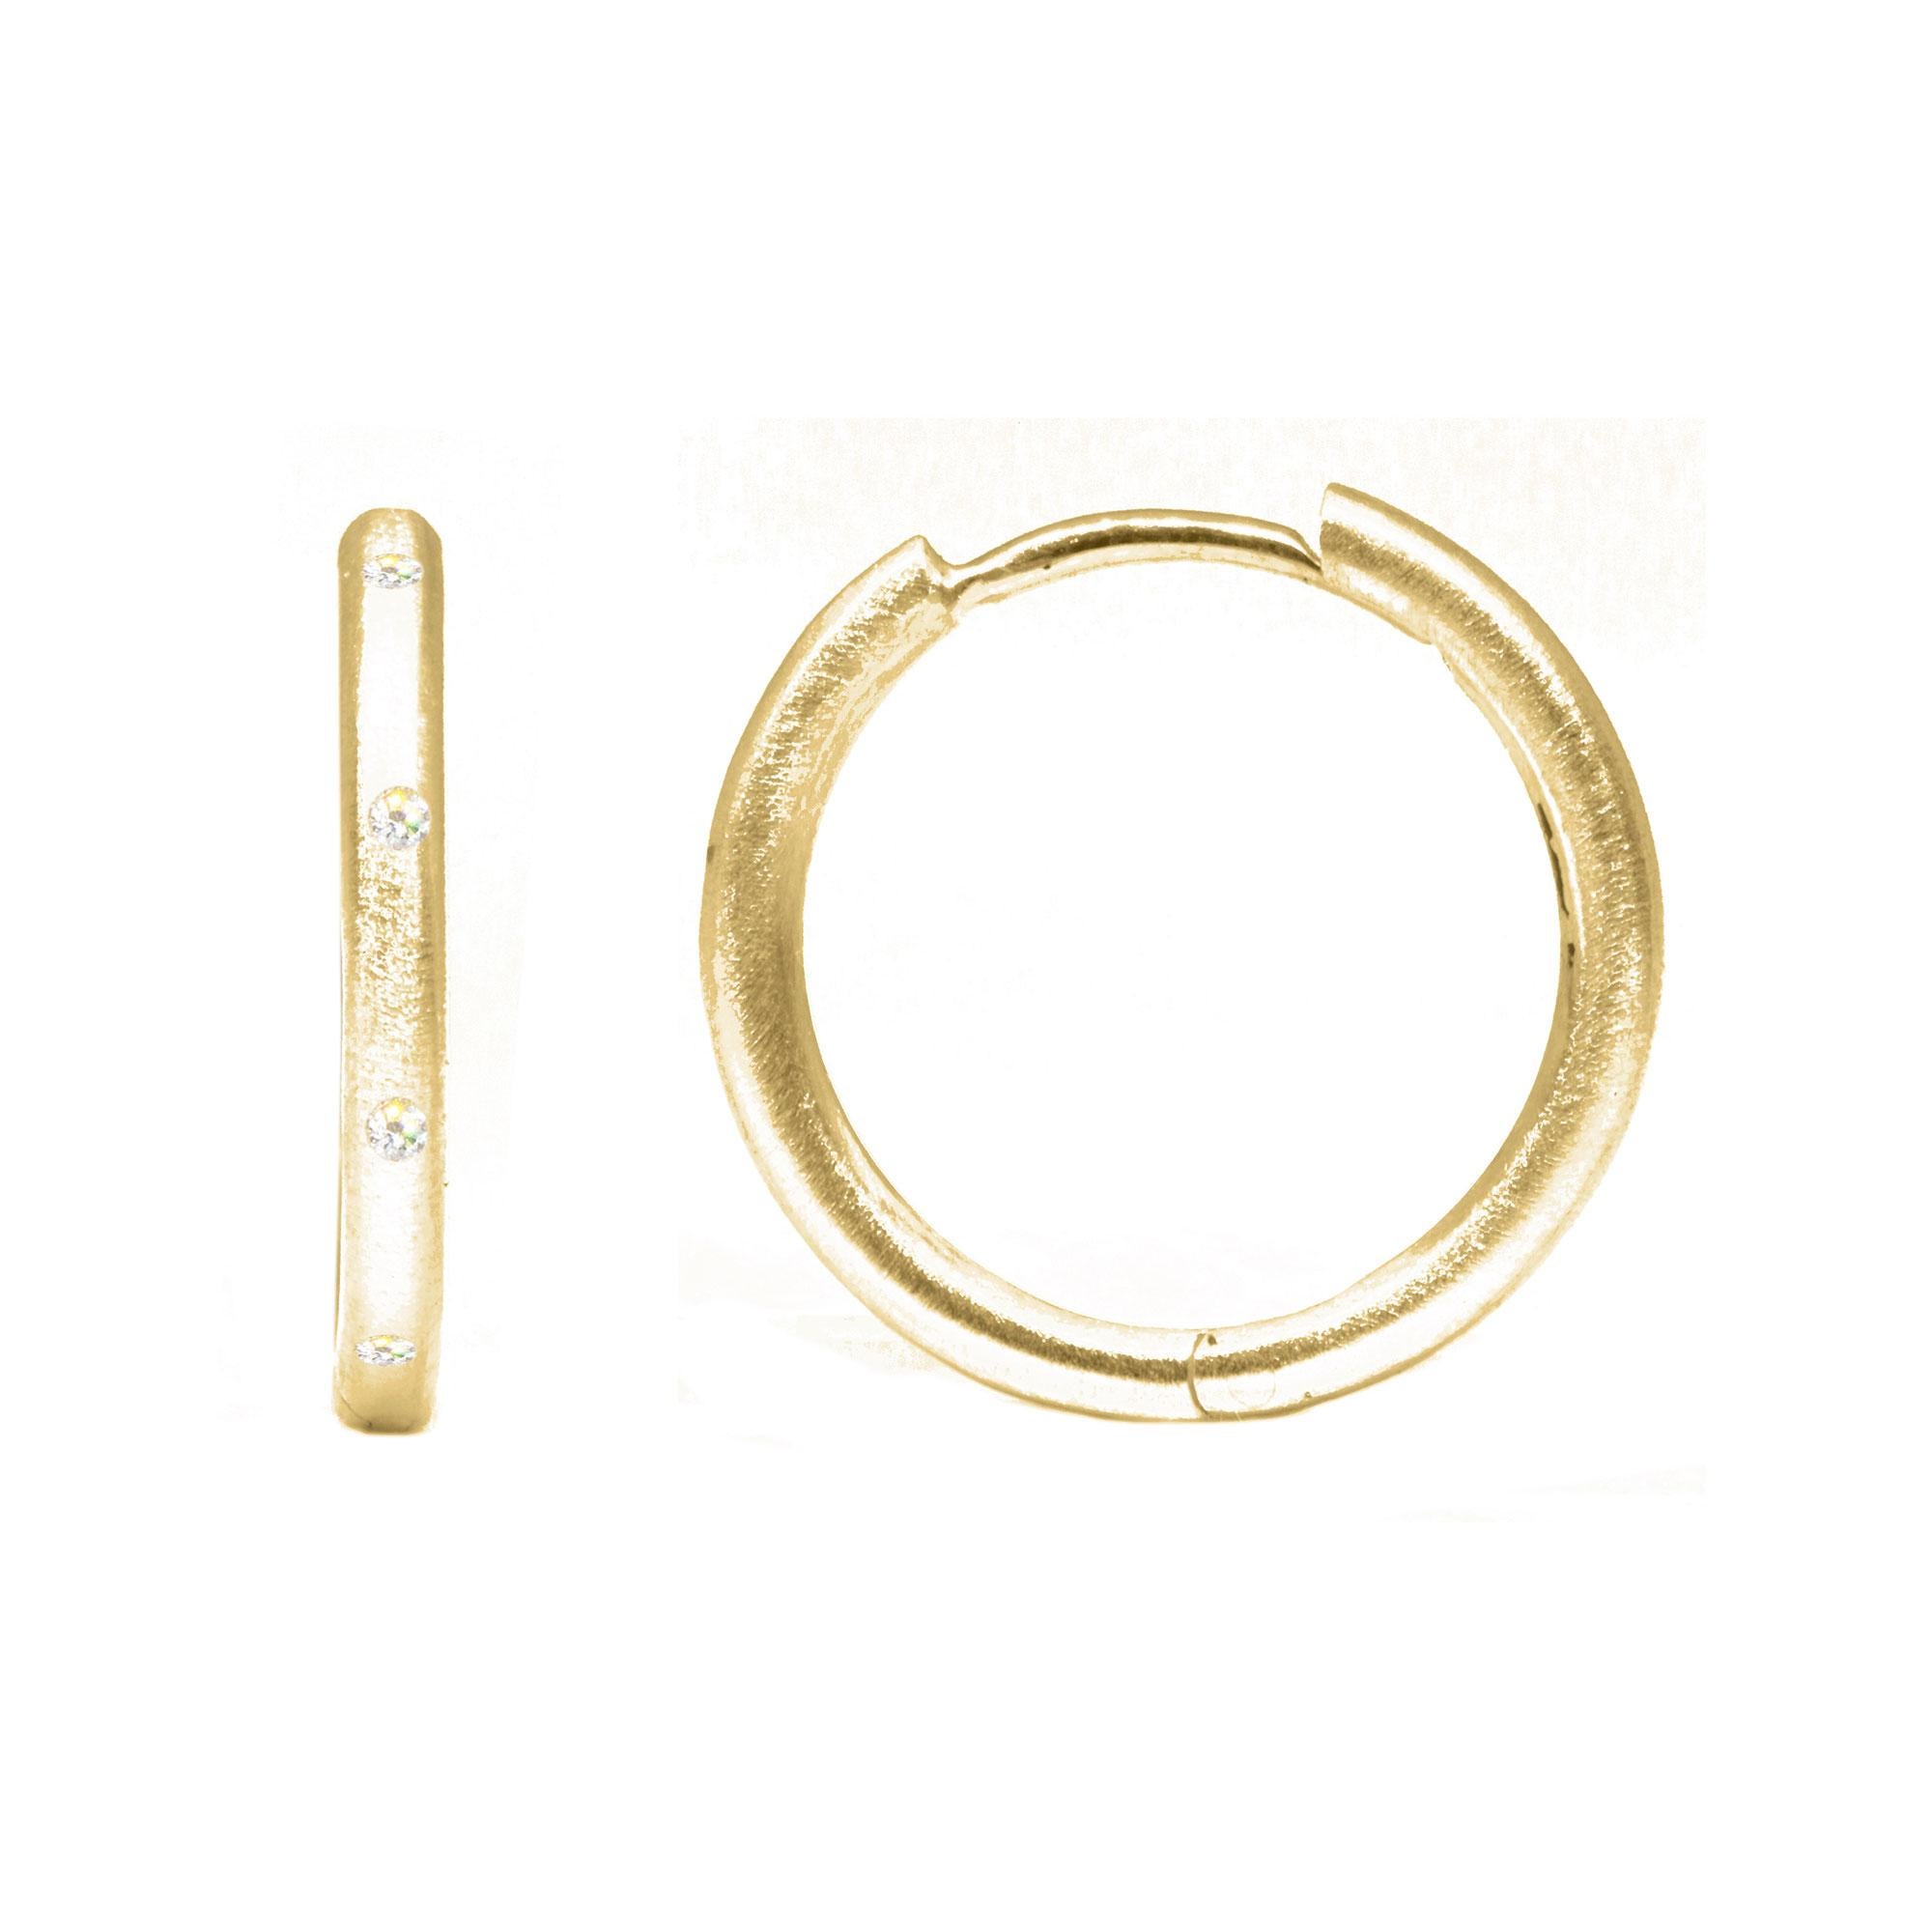 Die Ellie 18mm 18K Gold Hoops sind mit Diamanten aus verantwortungsvollen Quellen besetzt. Gepaart mit Edelsteinanhängern Ihrer Wahl ergänzen sie jedes Ensemble und sorgen für subtile Eleganz.

Details
Metall: 18K Rose Gold
Karat Diamant: 0,25
Größe